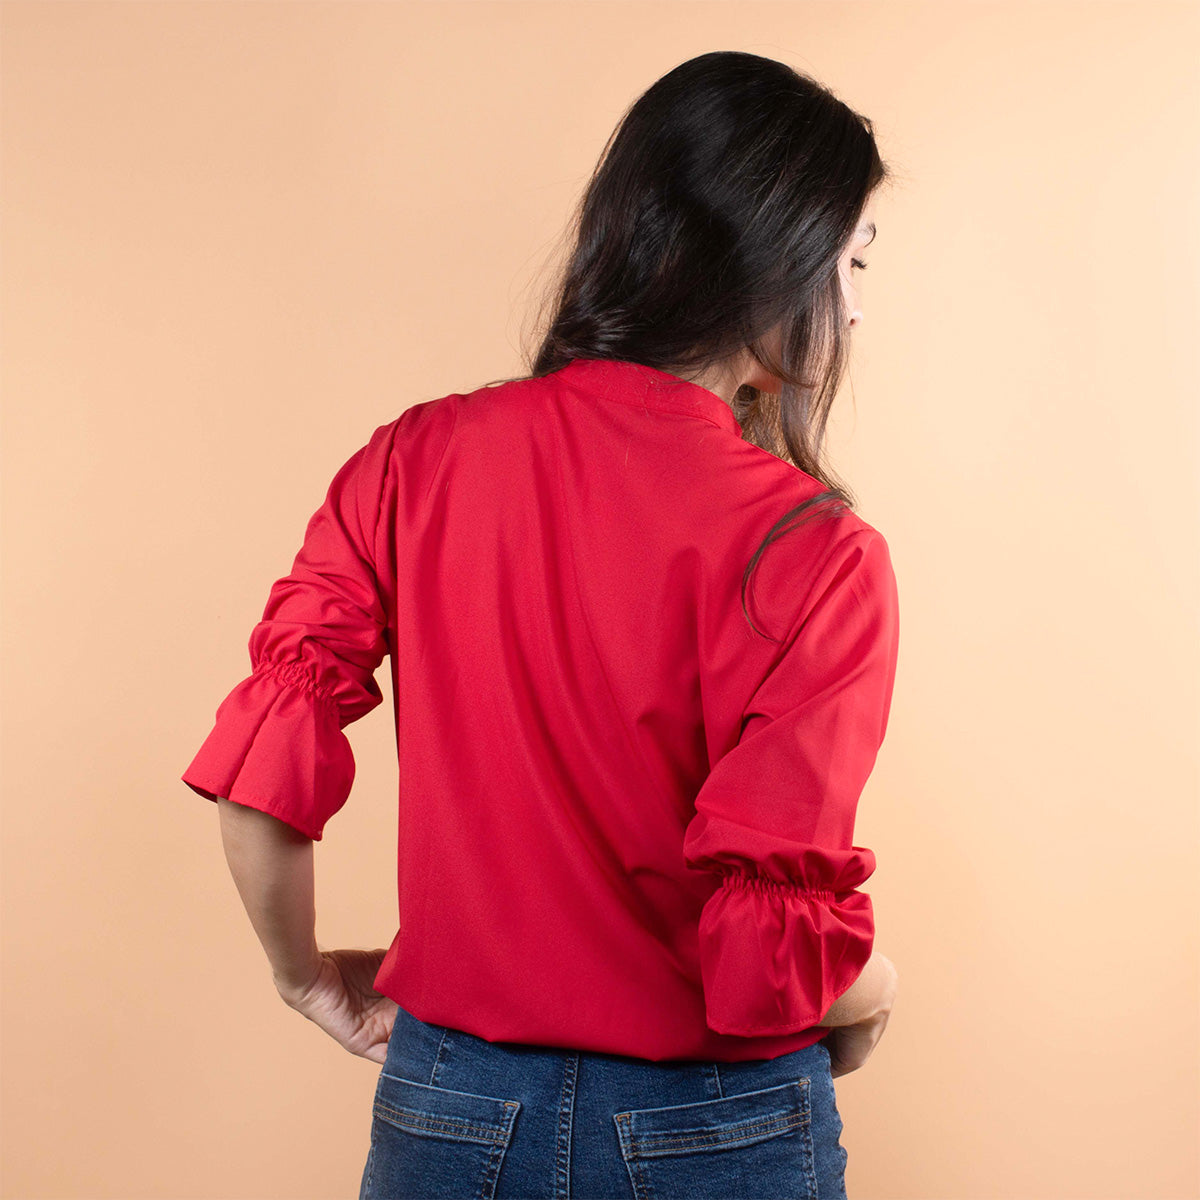 Blusa color rojo con moño ajustable en cuello